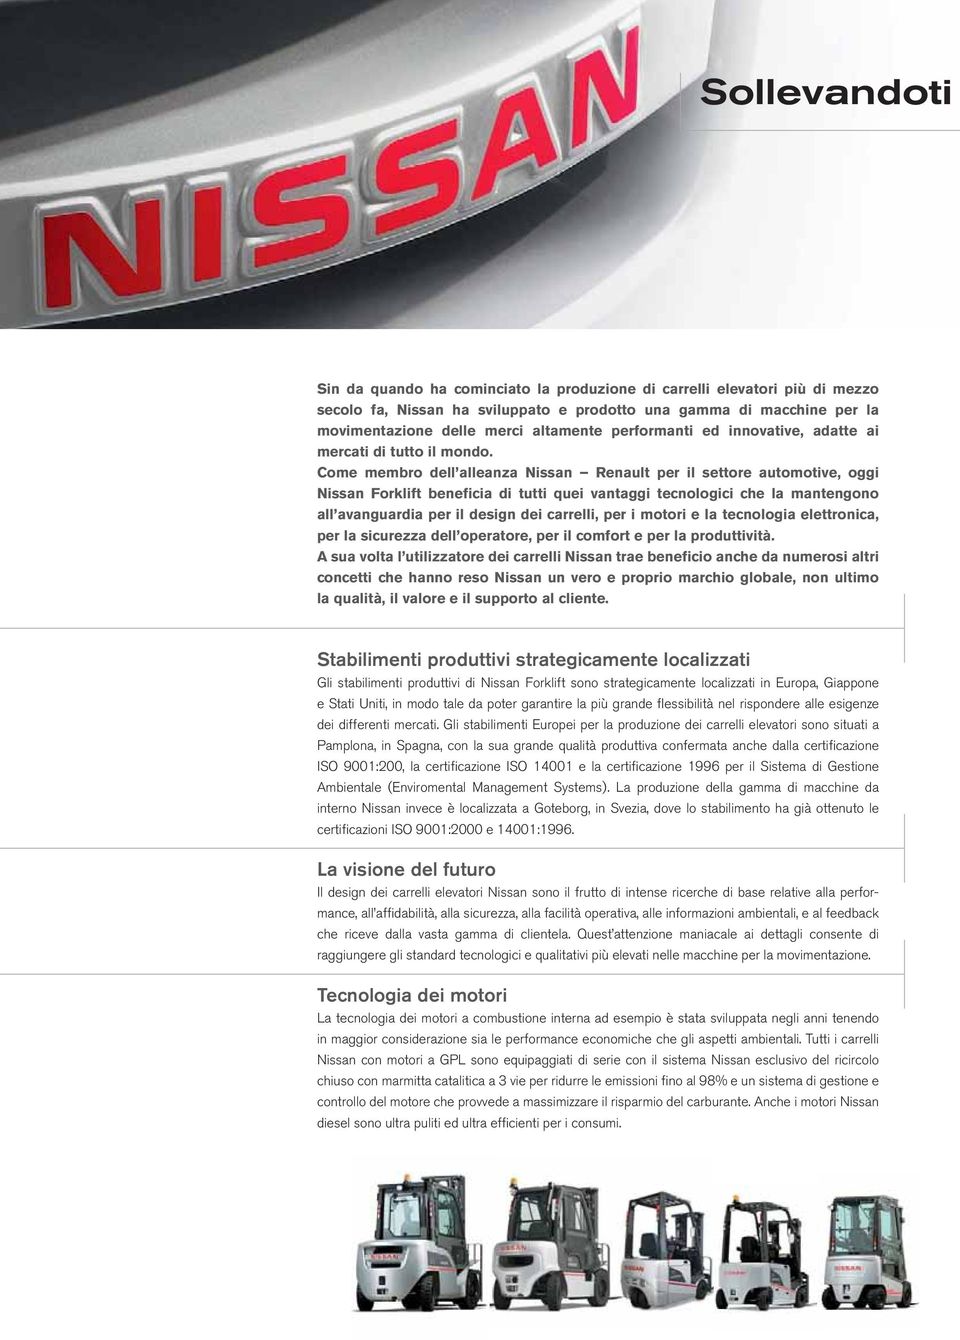 Come membro dell alleanza Nissan Renault per il settore automotive, oggi Nissan Forklift beneficia di tutti quei vantaggi tecnologici che la mantengono all avanguardia per il design dei carrelli, per